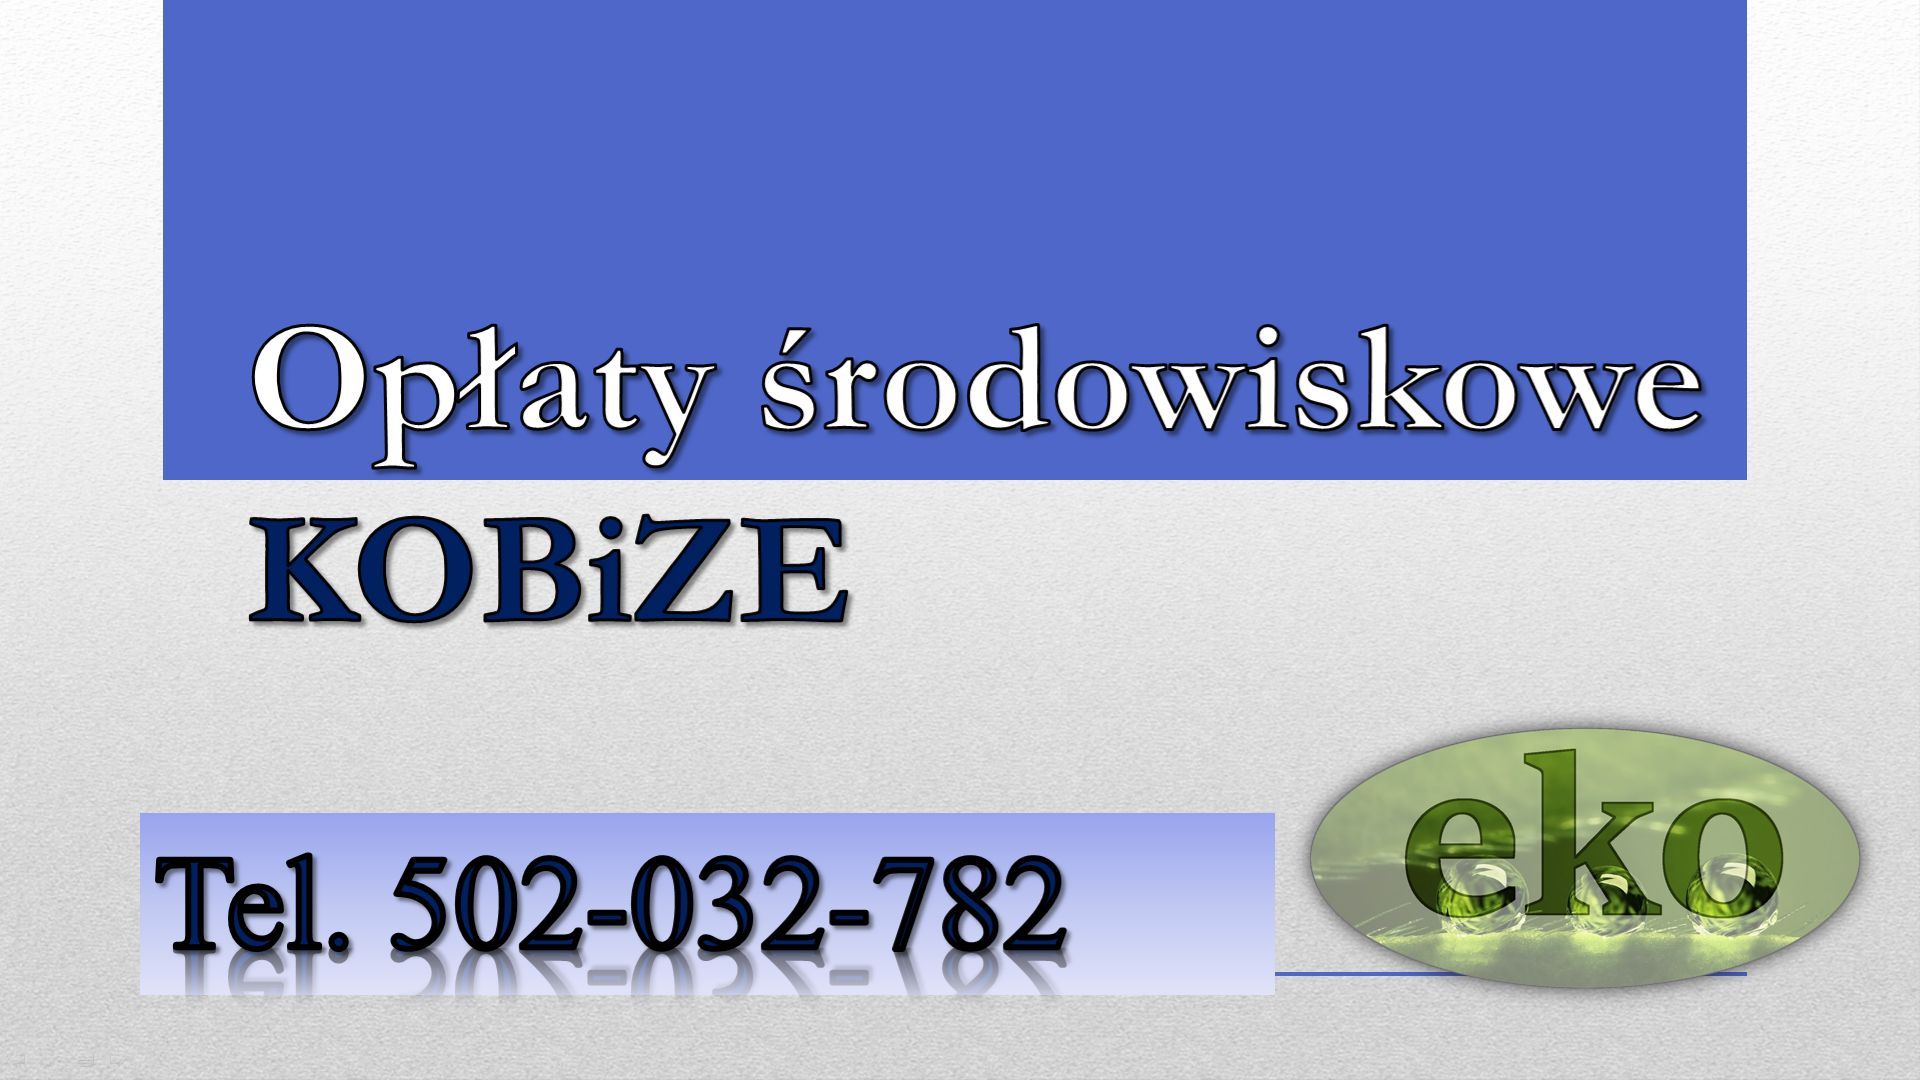 Policzenie opłat środowiskowych, tel. 502-032-782 sprawozdanie,  wykaz opłat Gdańsk - Zdjęcie 1